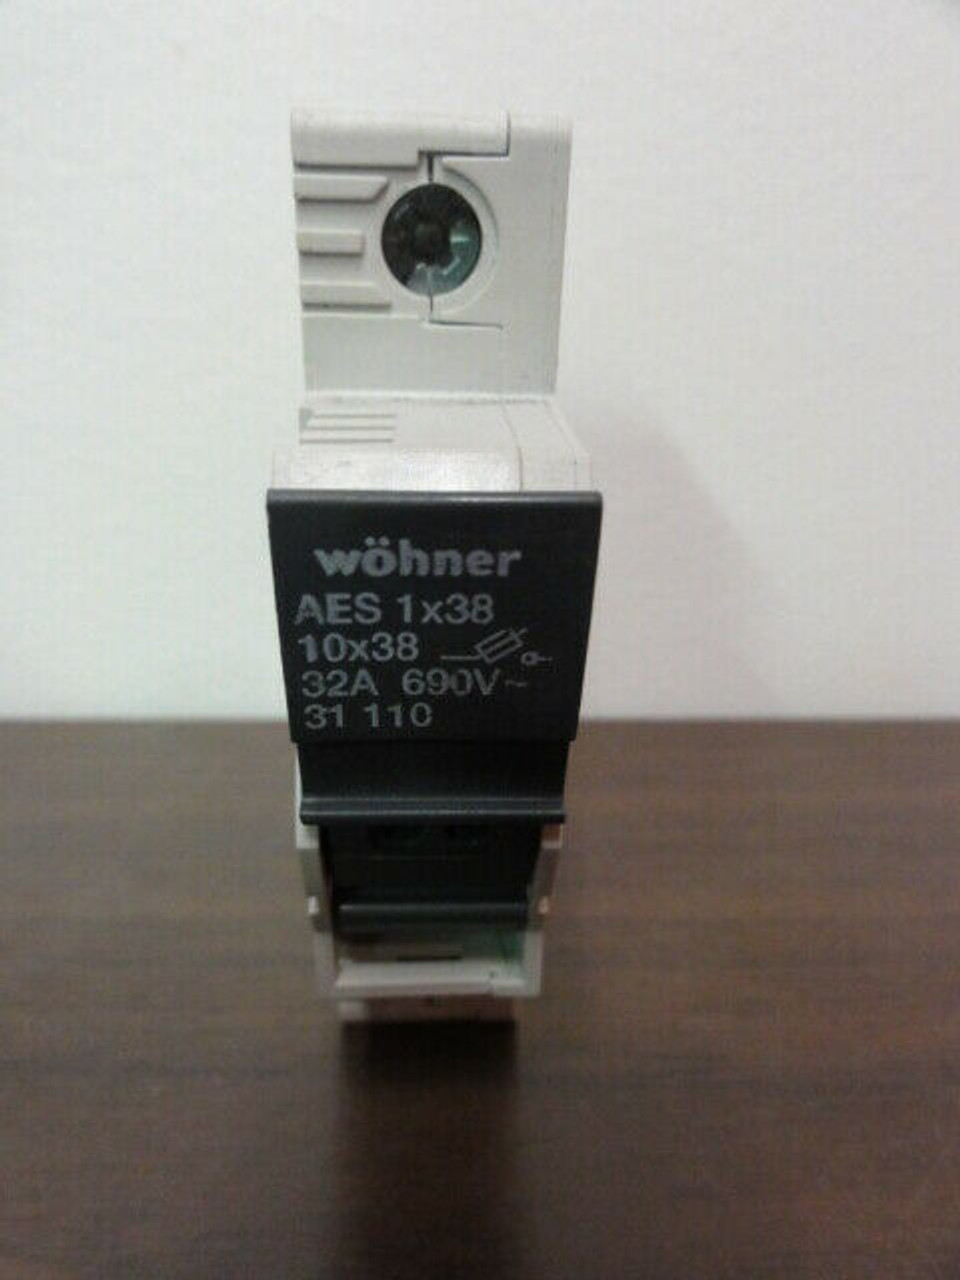 Wohner Model AES 1x38 31 110 Fuse Holder 32A 690V 1P